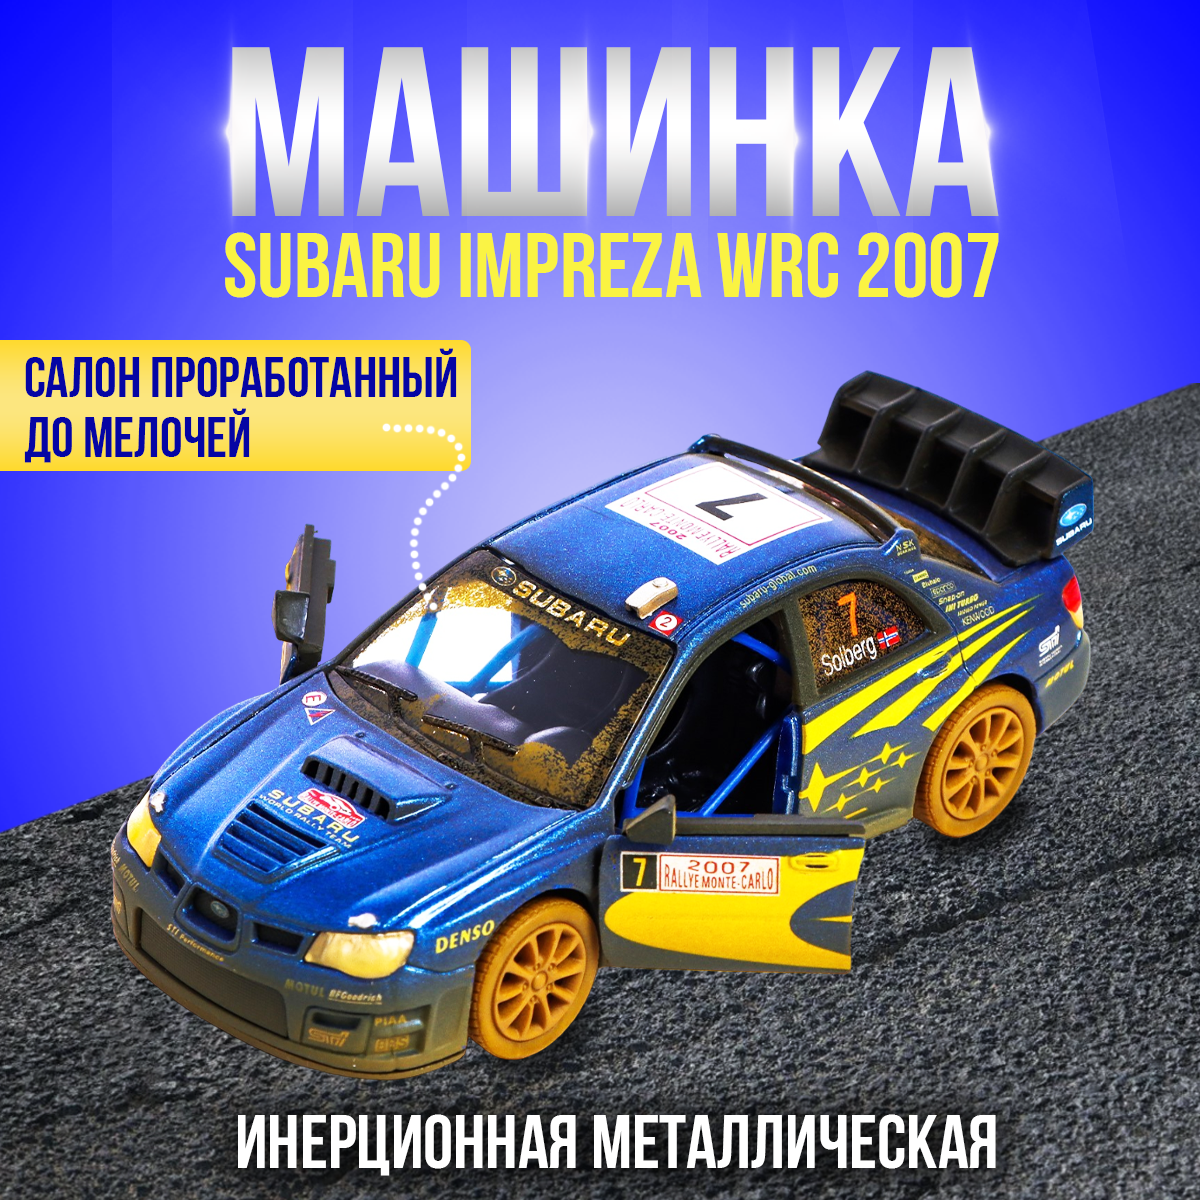 Машинка игрушка 1:36 Subaru Impreza WRC 2007 (Субару Импреза) металлическая, инерционная / После заезда